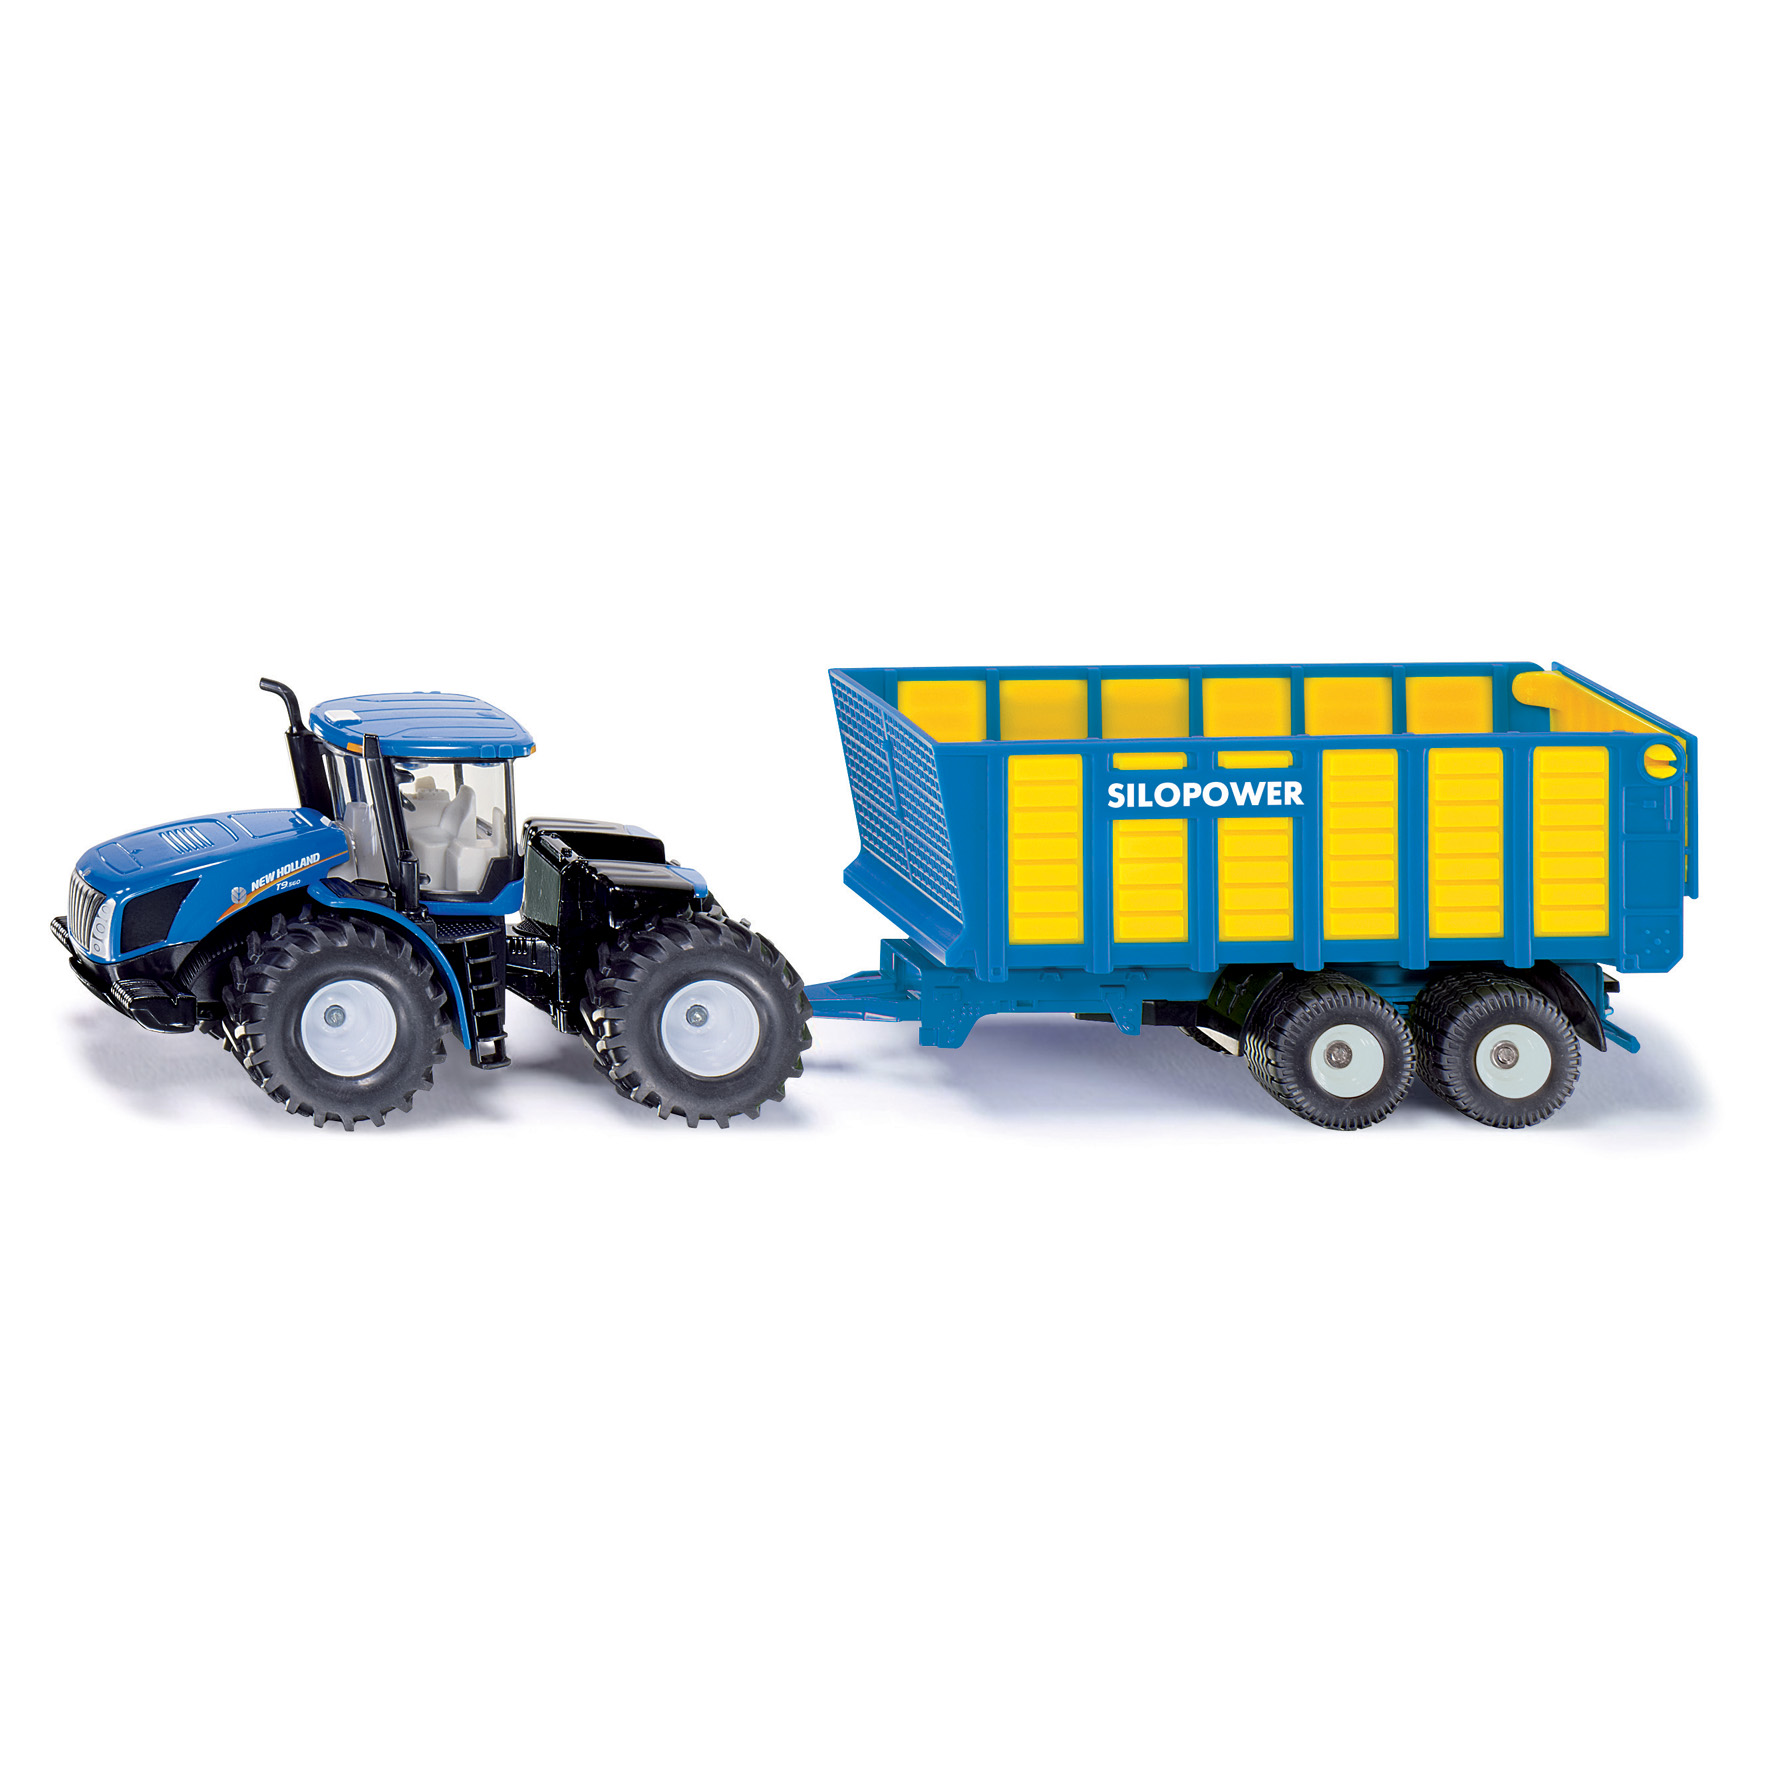 Traktorer & Lantbruksfordon siku traktor new h t9.560 1:50